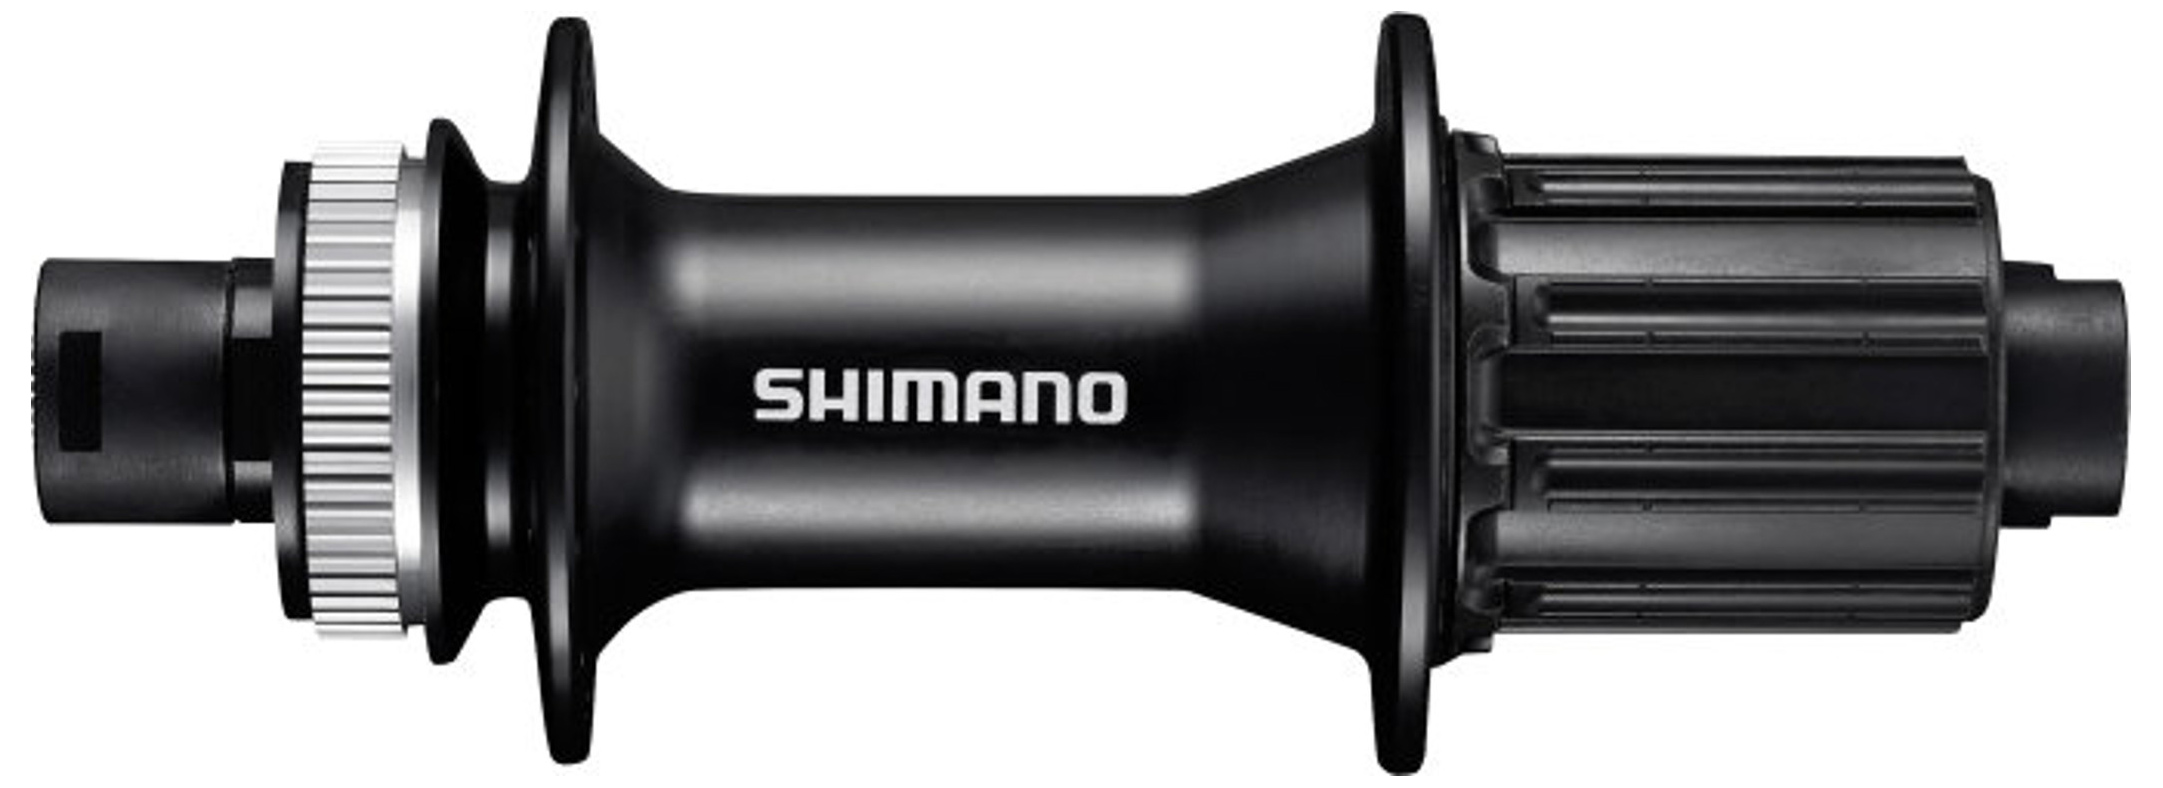  Втулка для велосипеда Shimano MT400, 36 отв, 8-11 ск (EFHMT400A)